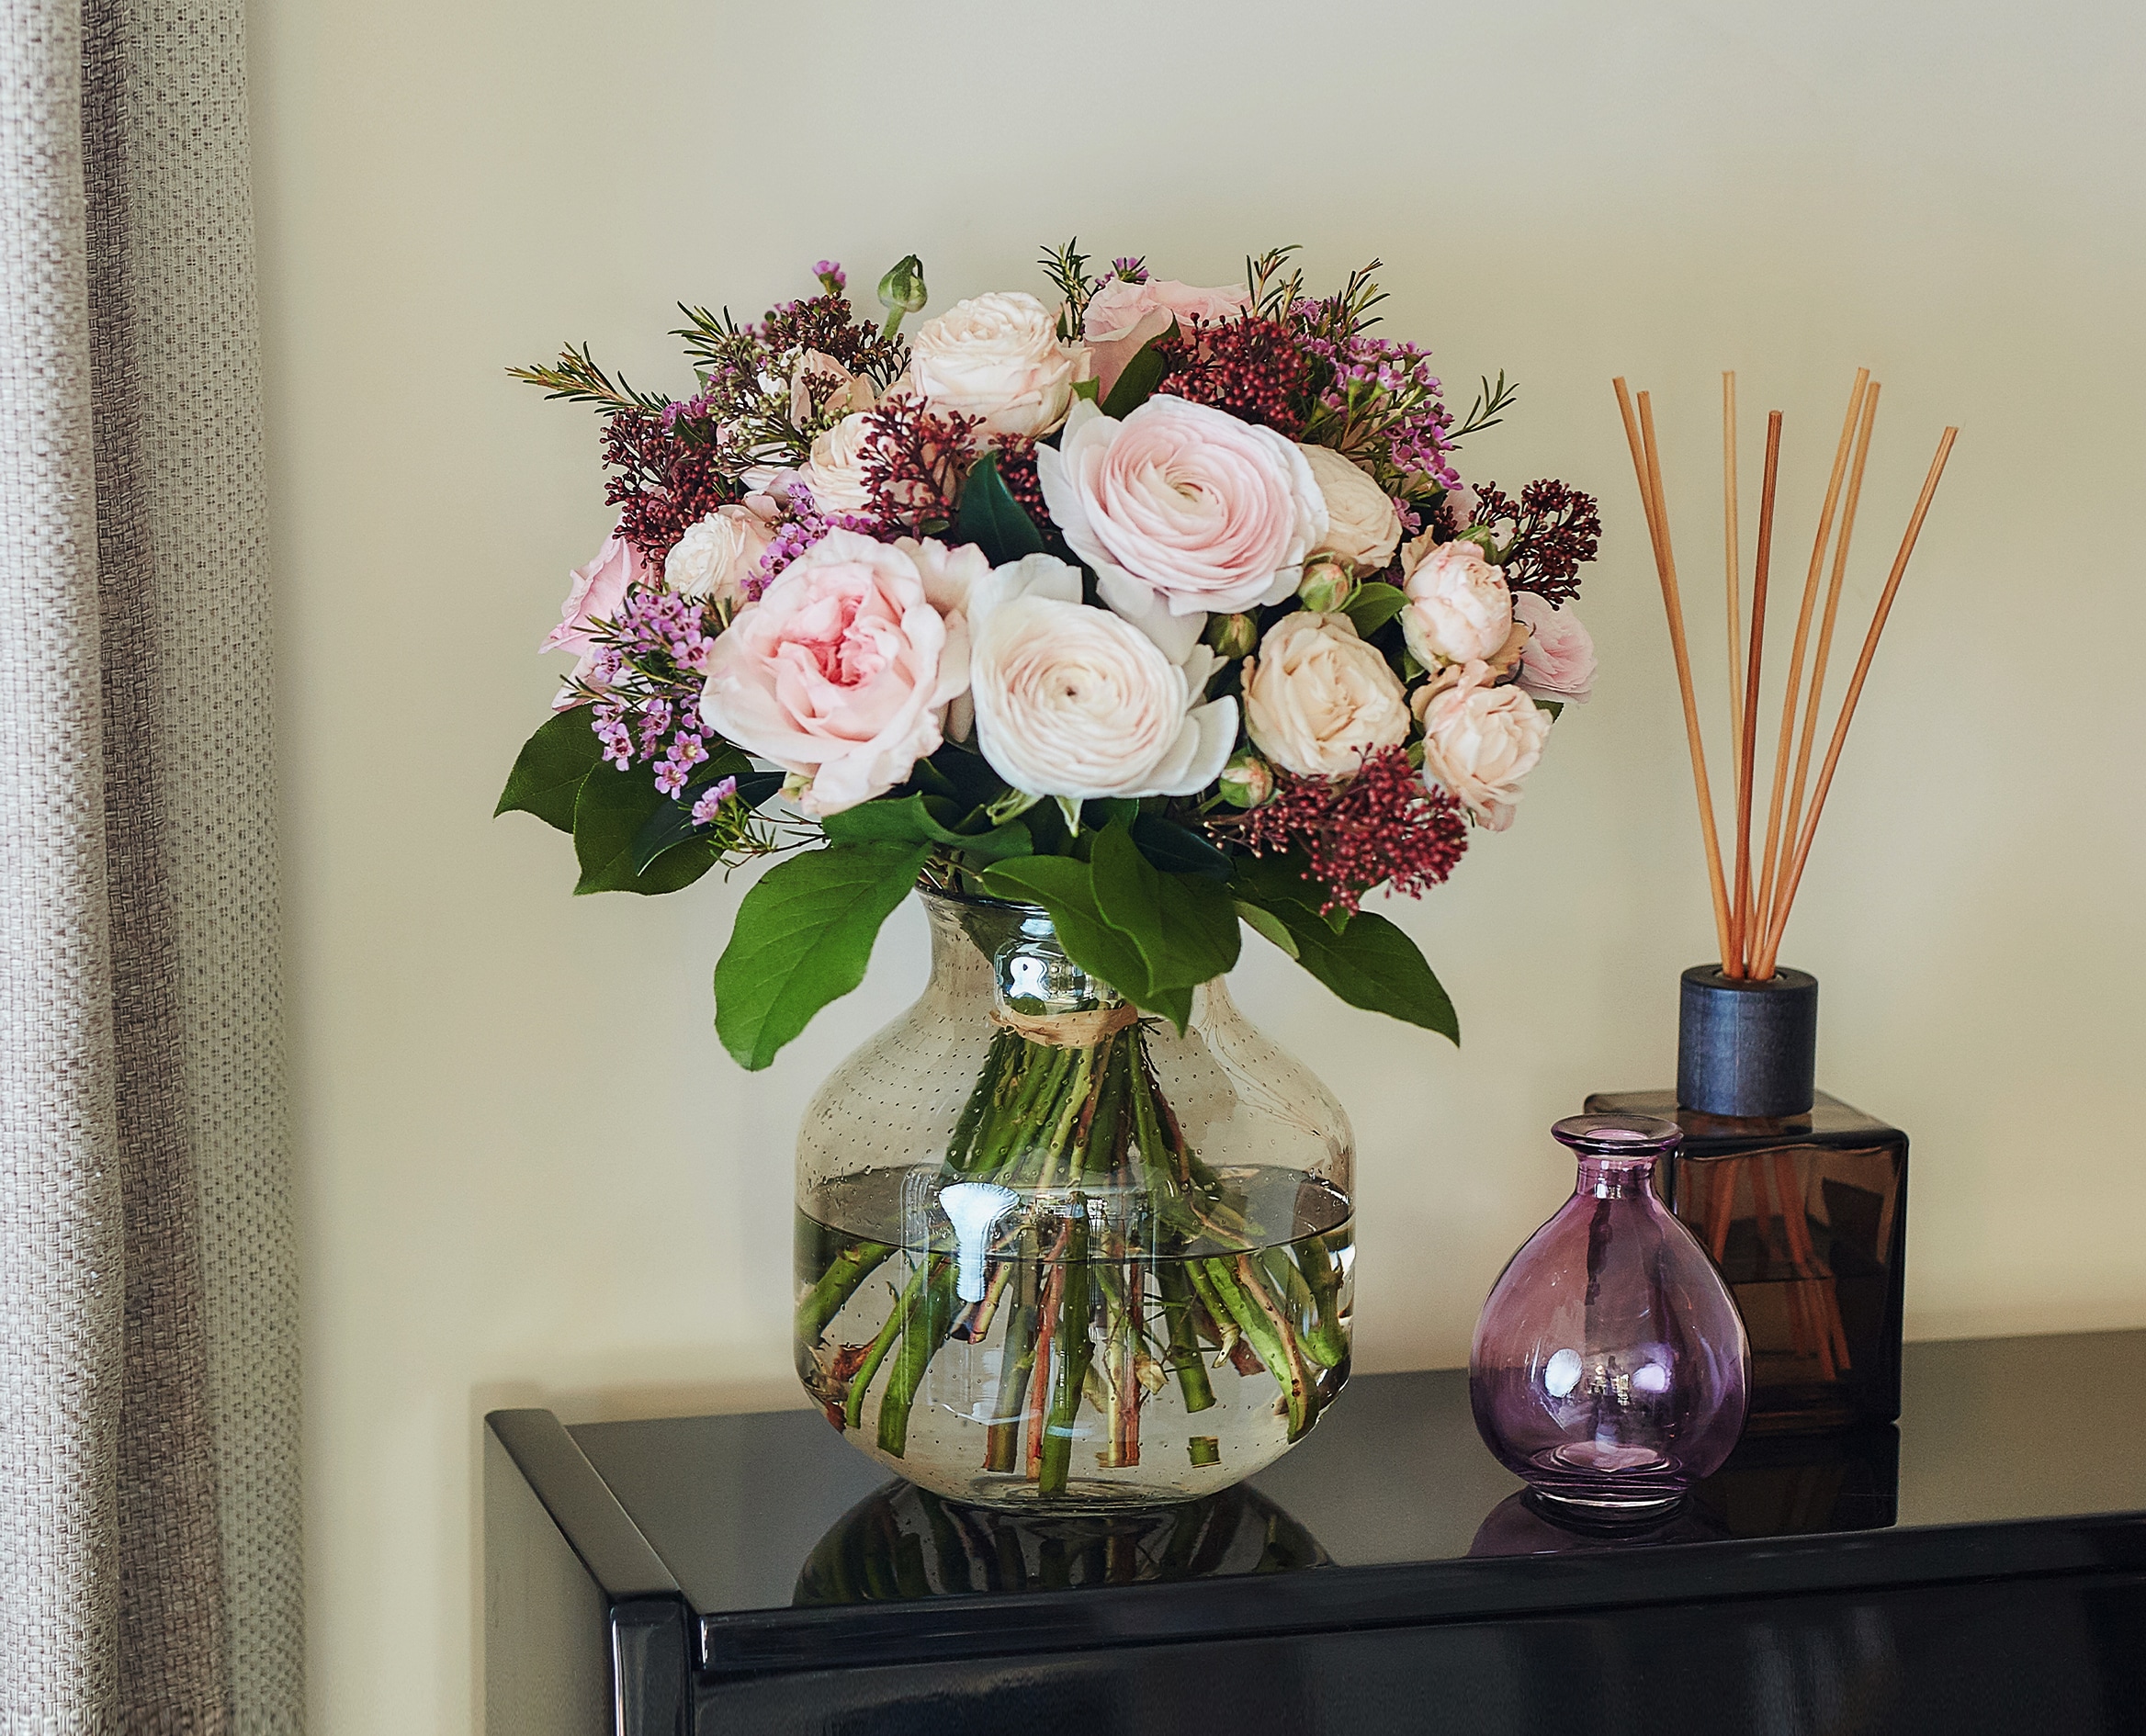 Envoyez un beau Bouquet de fleurs - Livraison en France